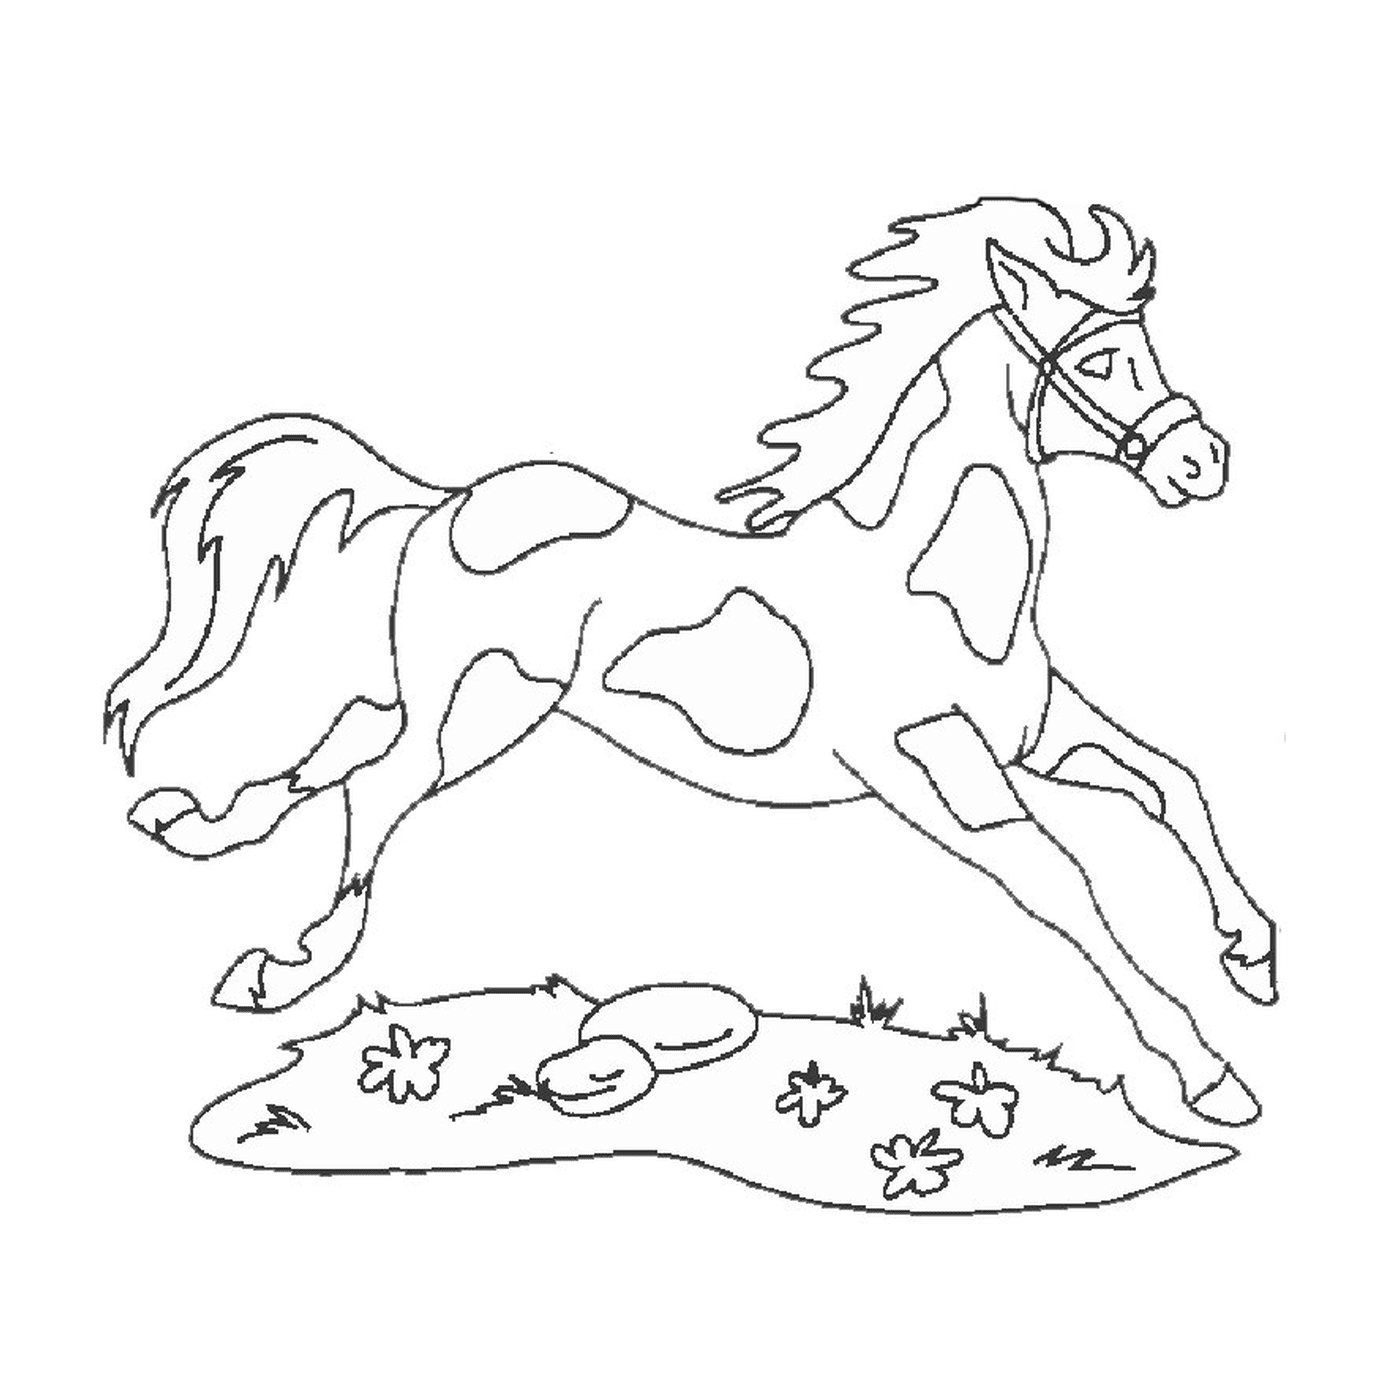  Cavallo e cane - Un cavallo che corre 